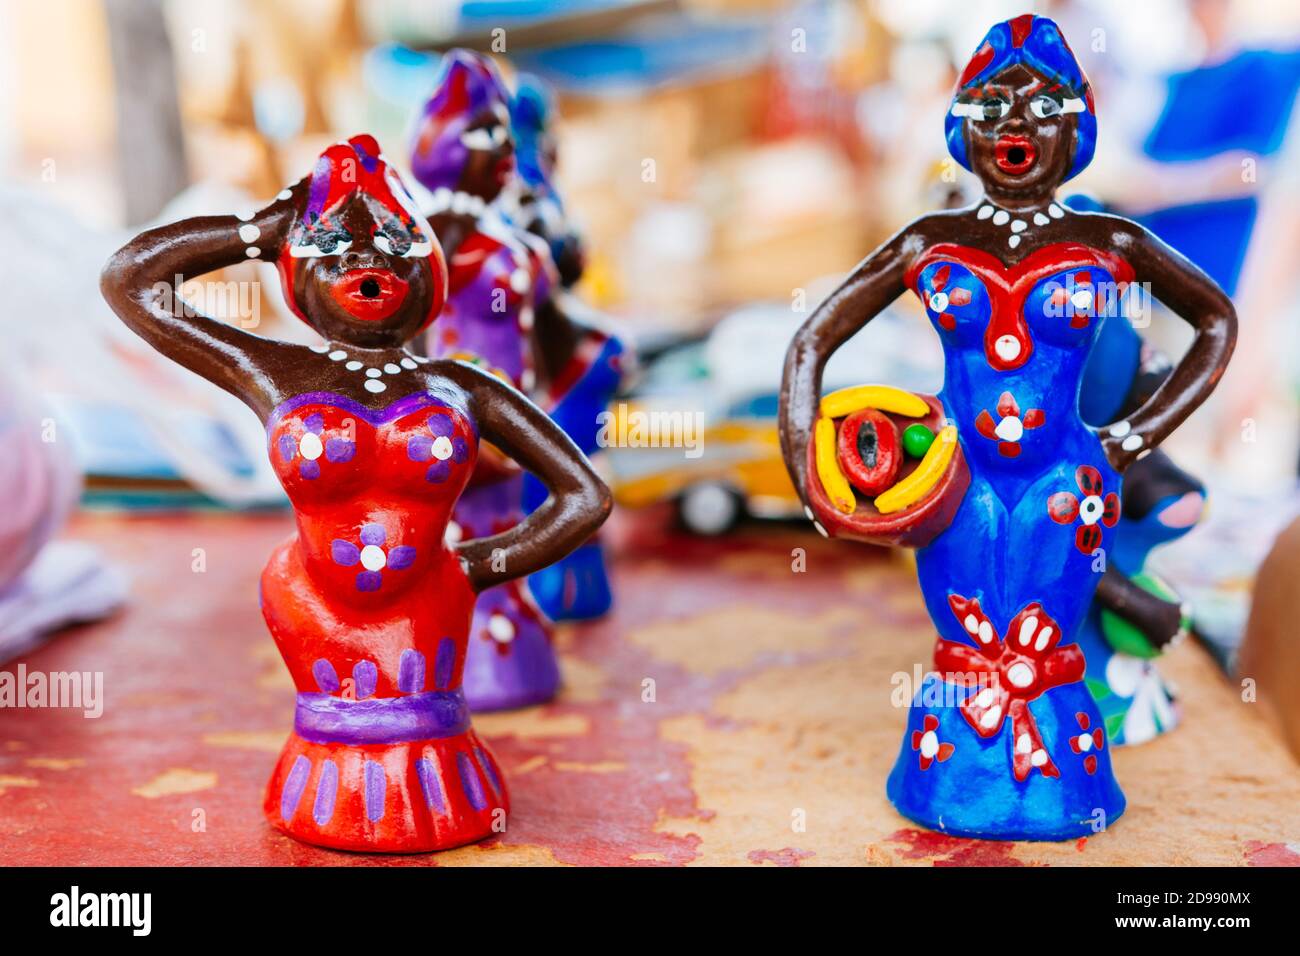 Sculptures en bois inspirées de la culture afro-cubaine à vendre comme souvenir pour les touristes. Trinidad, Sancti Spíritus, Cuba, Amérique latine et Caraïbes Banque D'Images